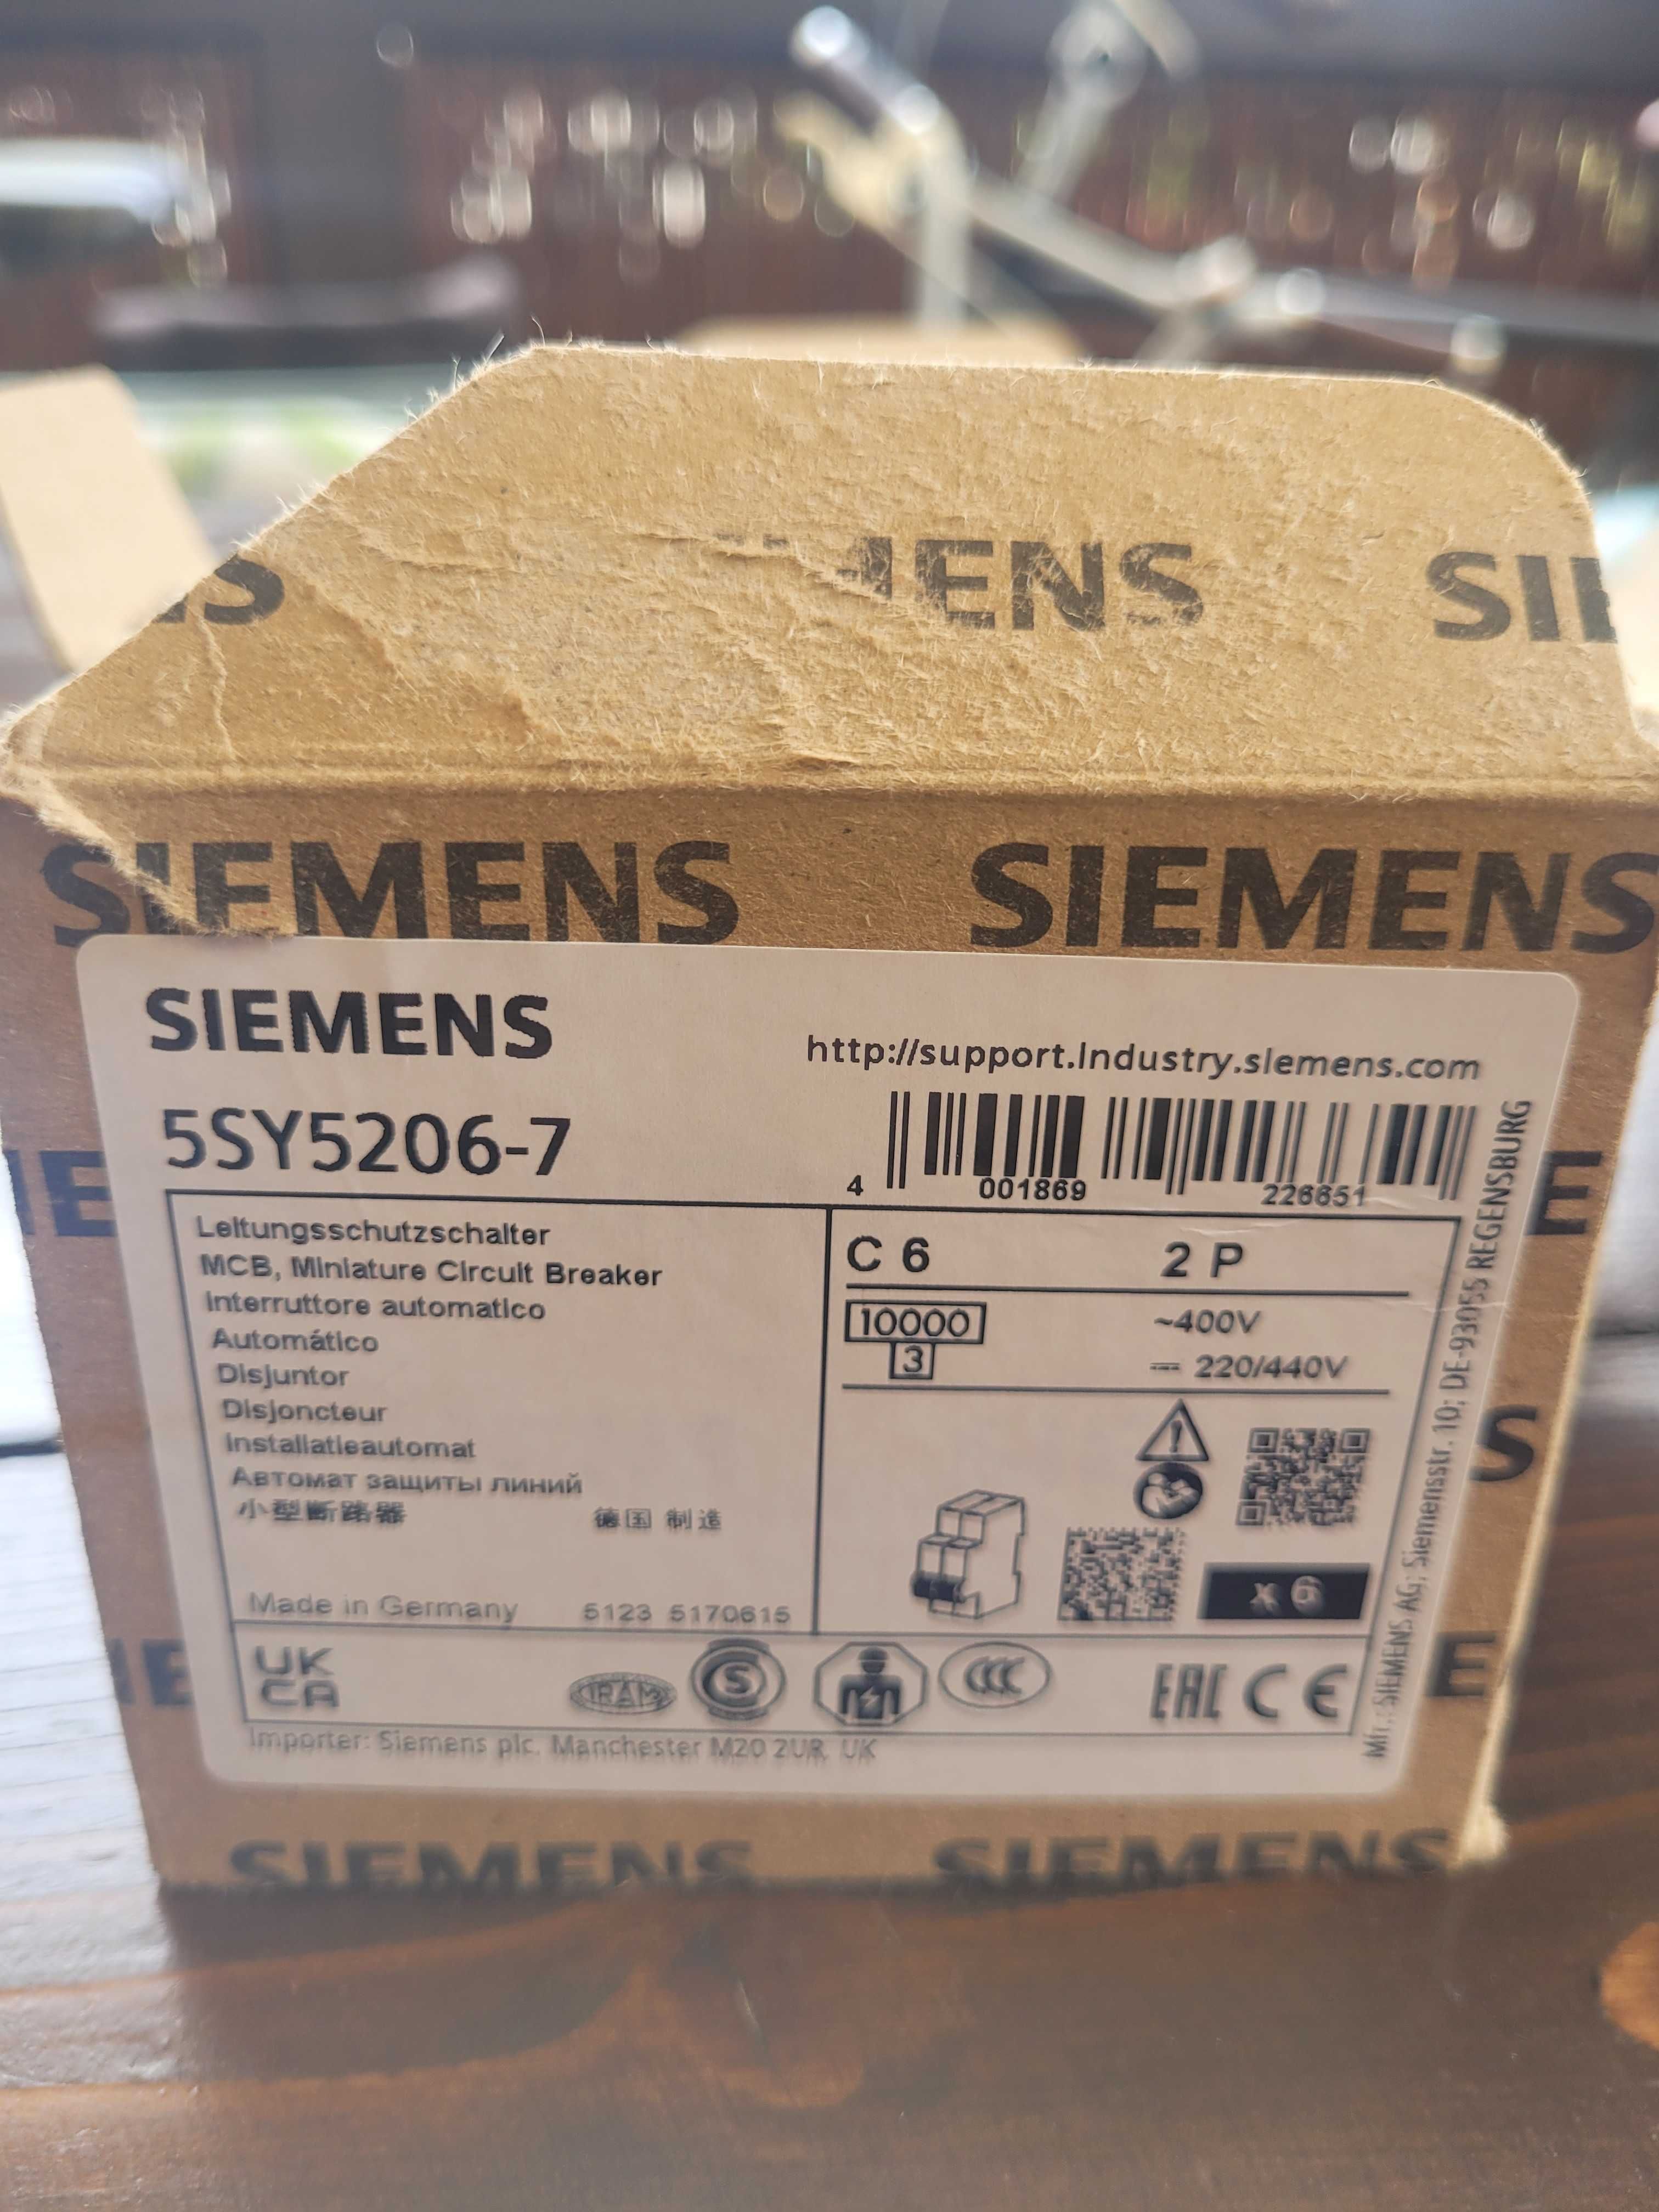 Zestaw automatyki przemysłowej - PLC - Siemens, itp.